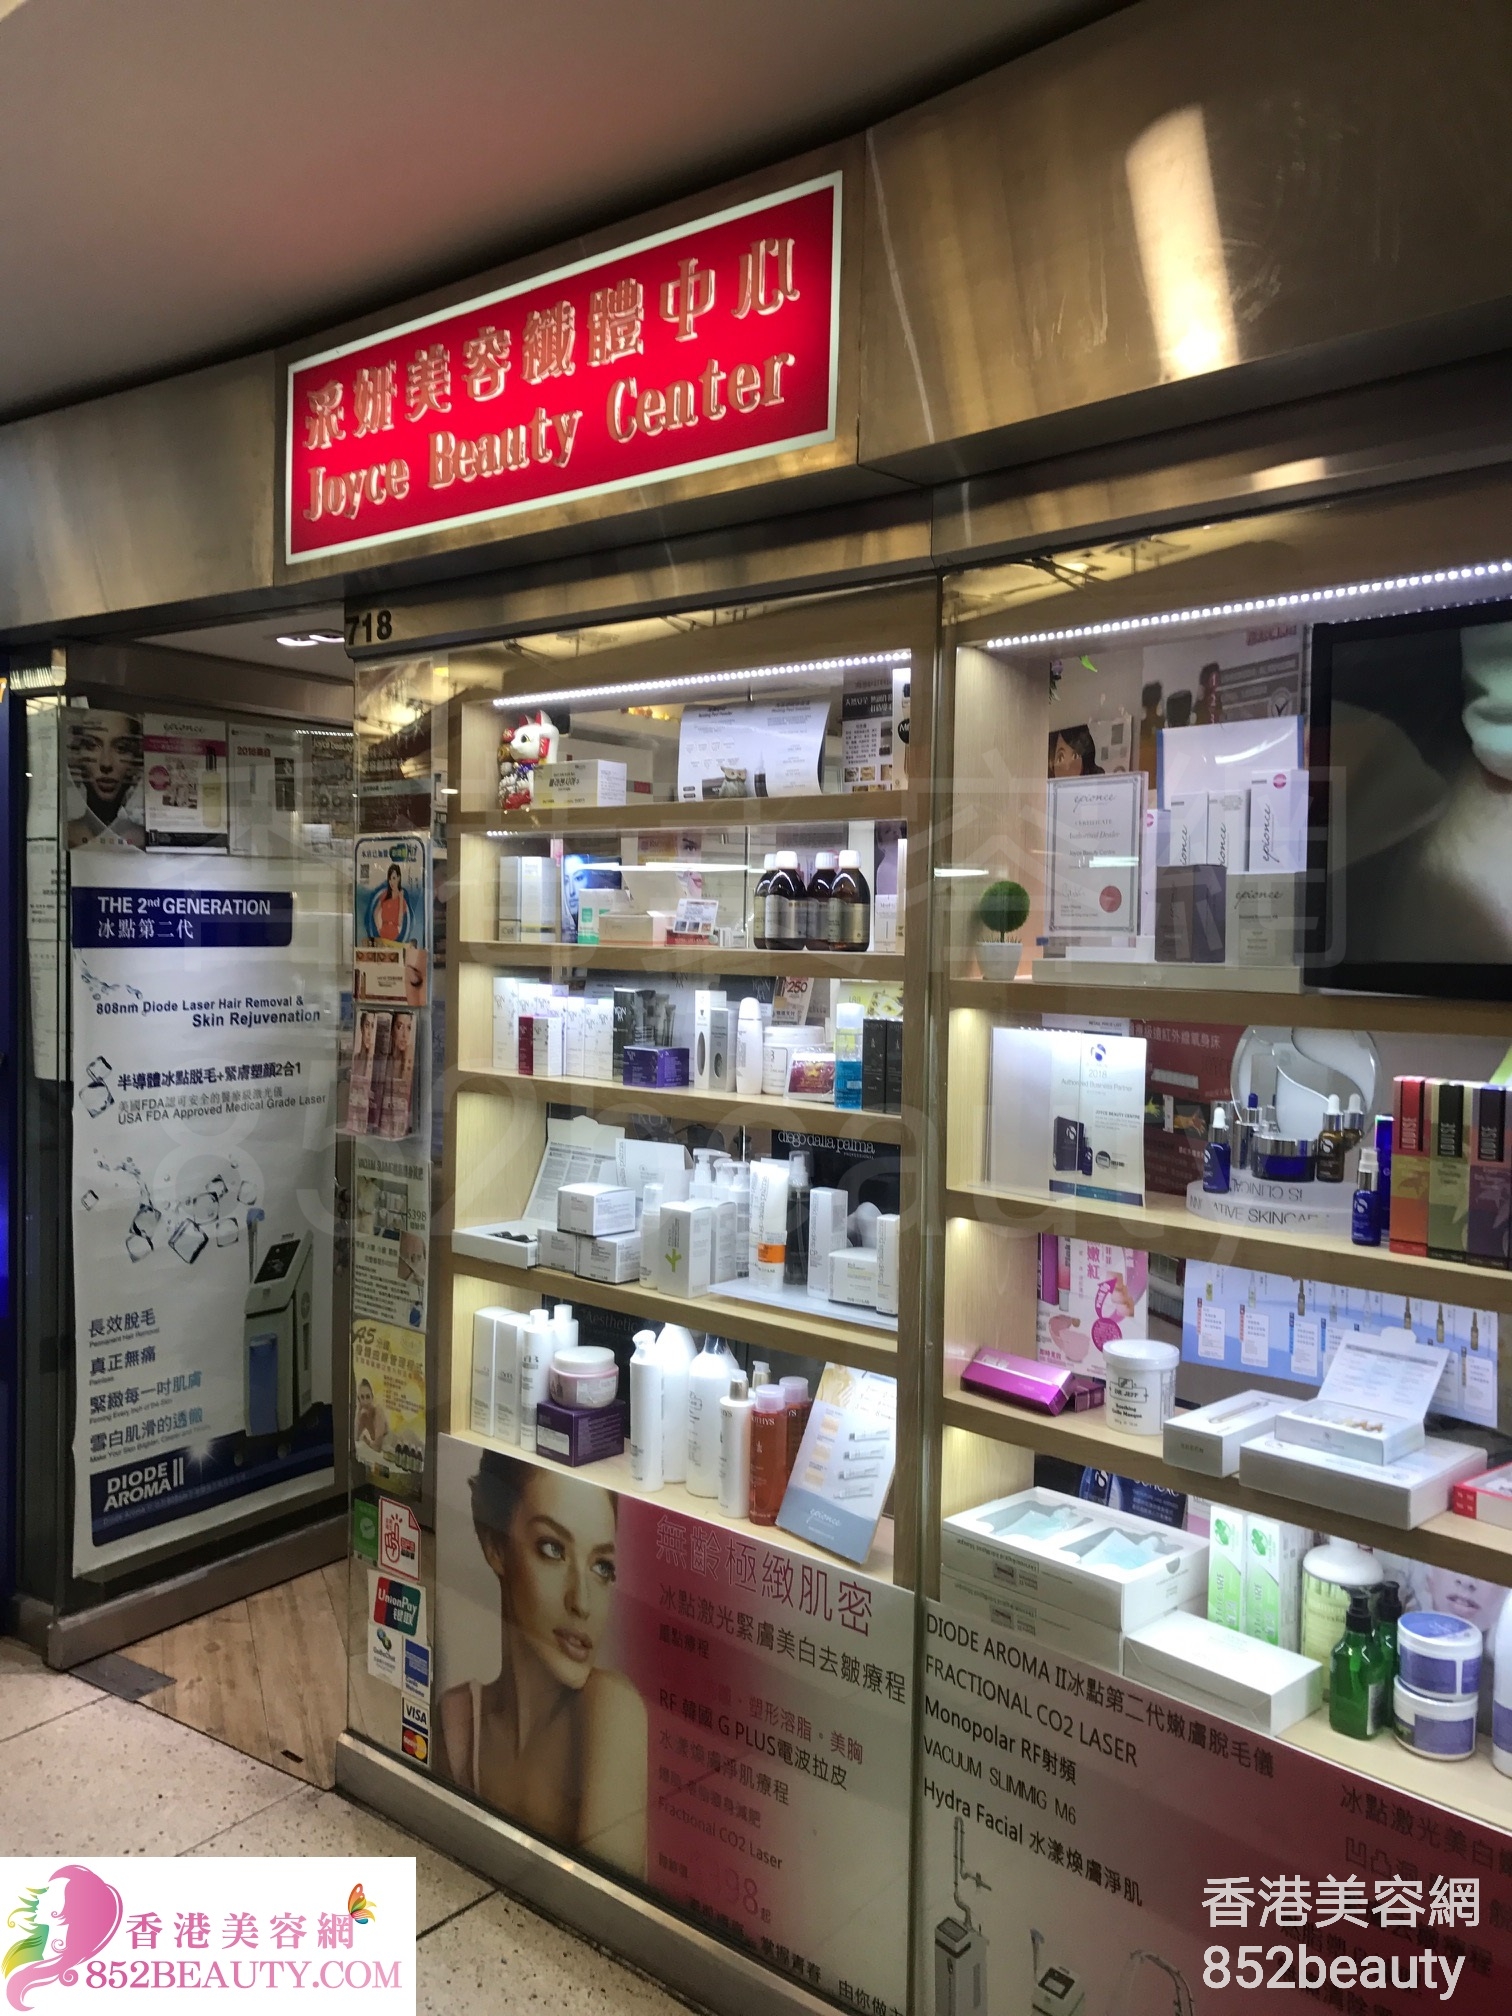 Medical Aesthetics: 采妍美容纖體中心 Joyce Beauty Center (西九龍中心)